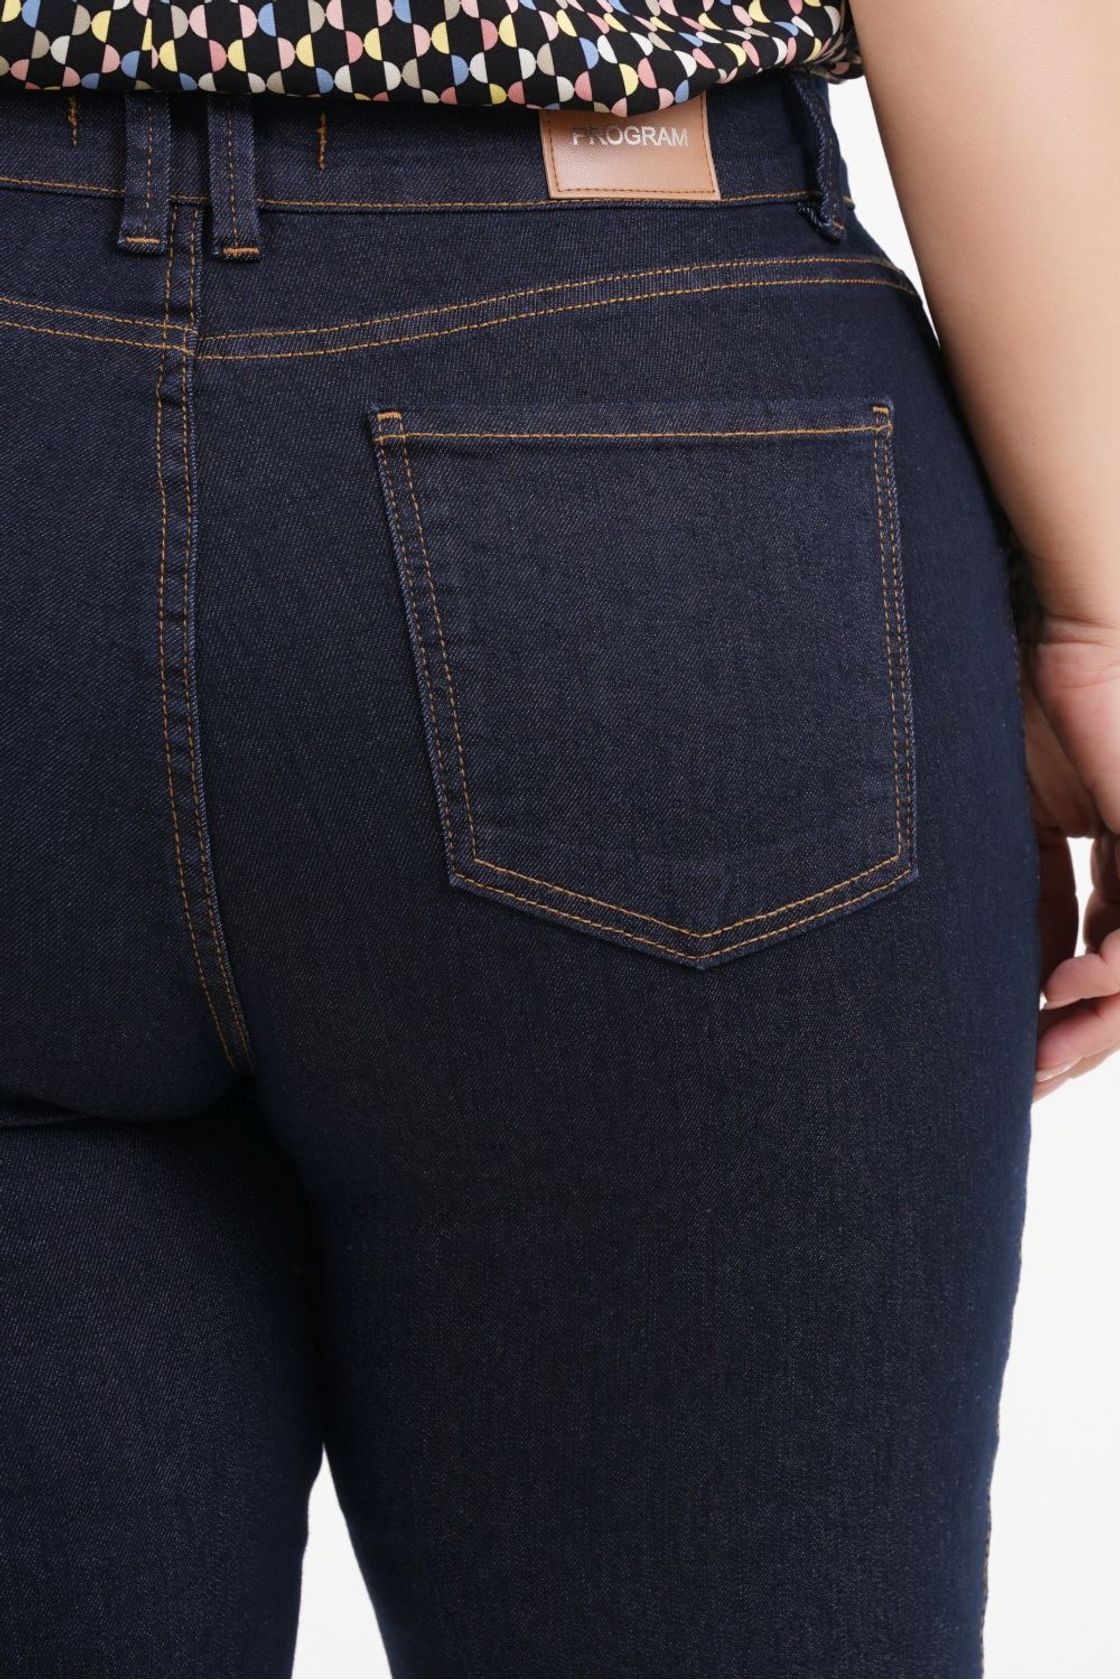 Calça Boot Cut Plus Size Jeans com Fenda Best Size - E-commerce Multimarcas Plus  Size